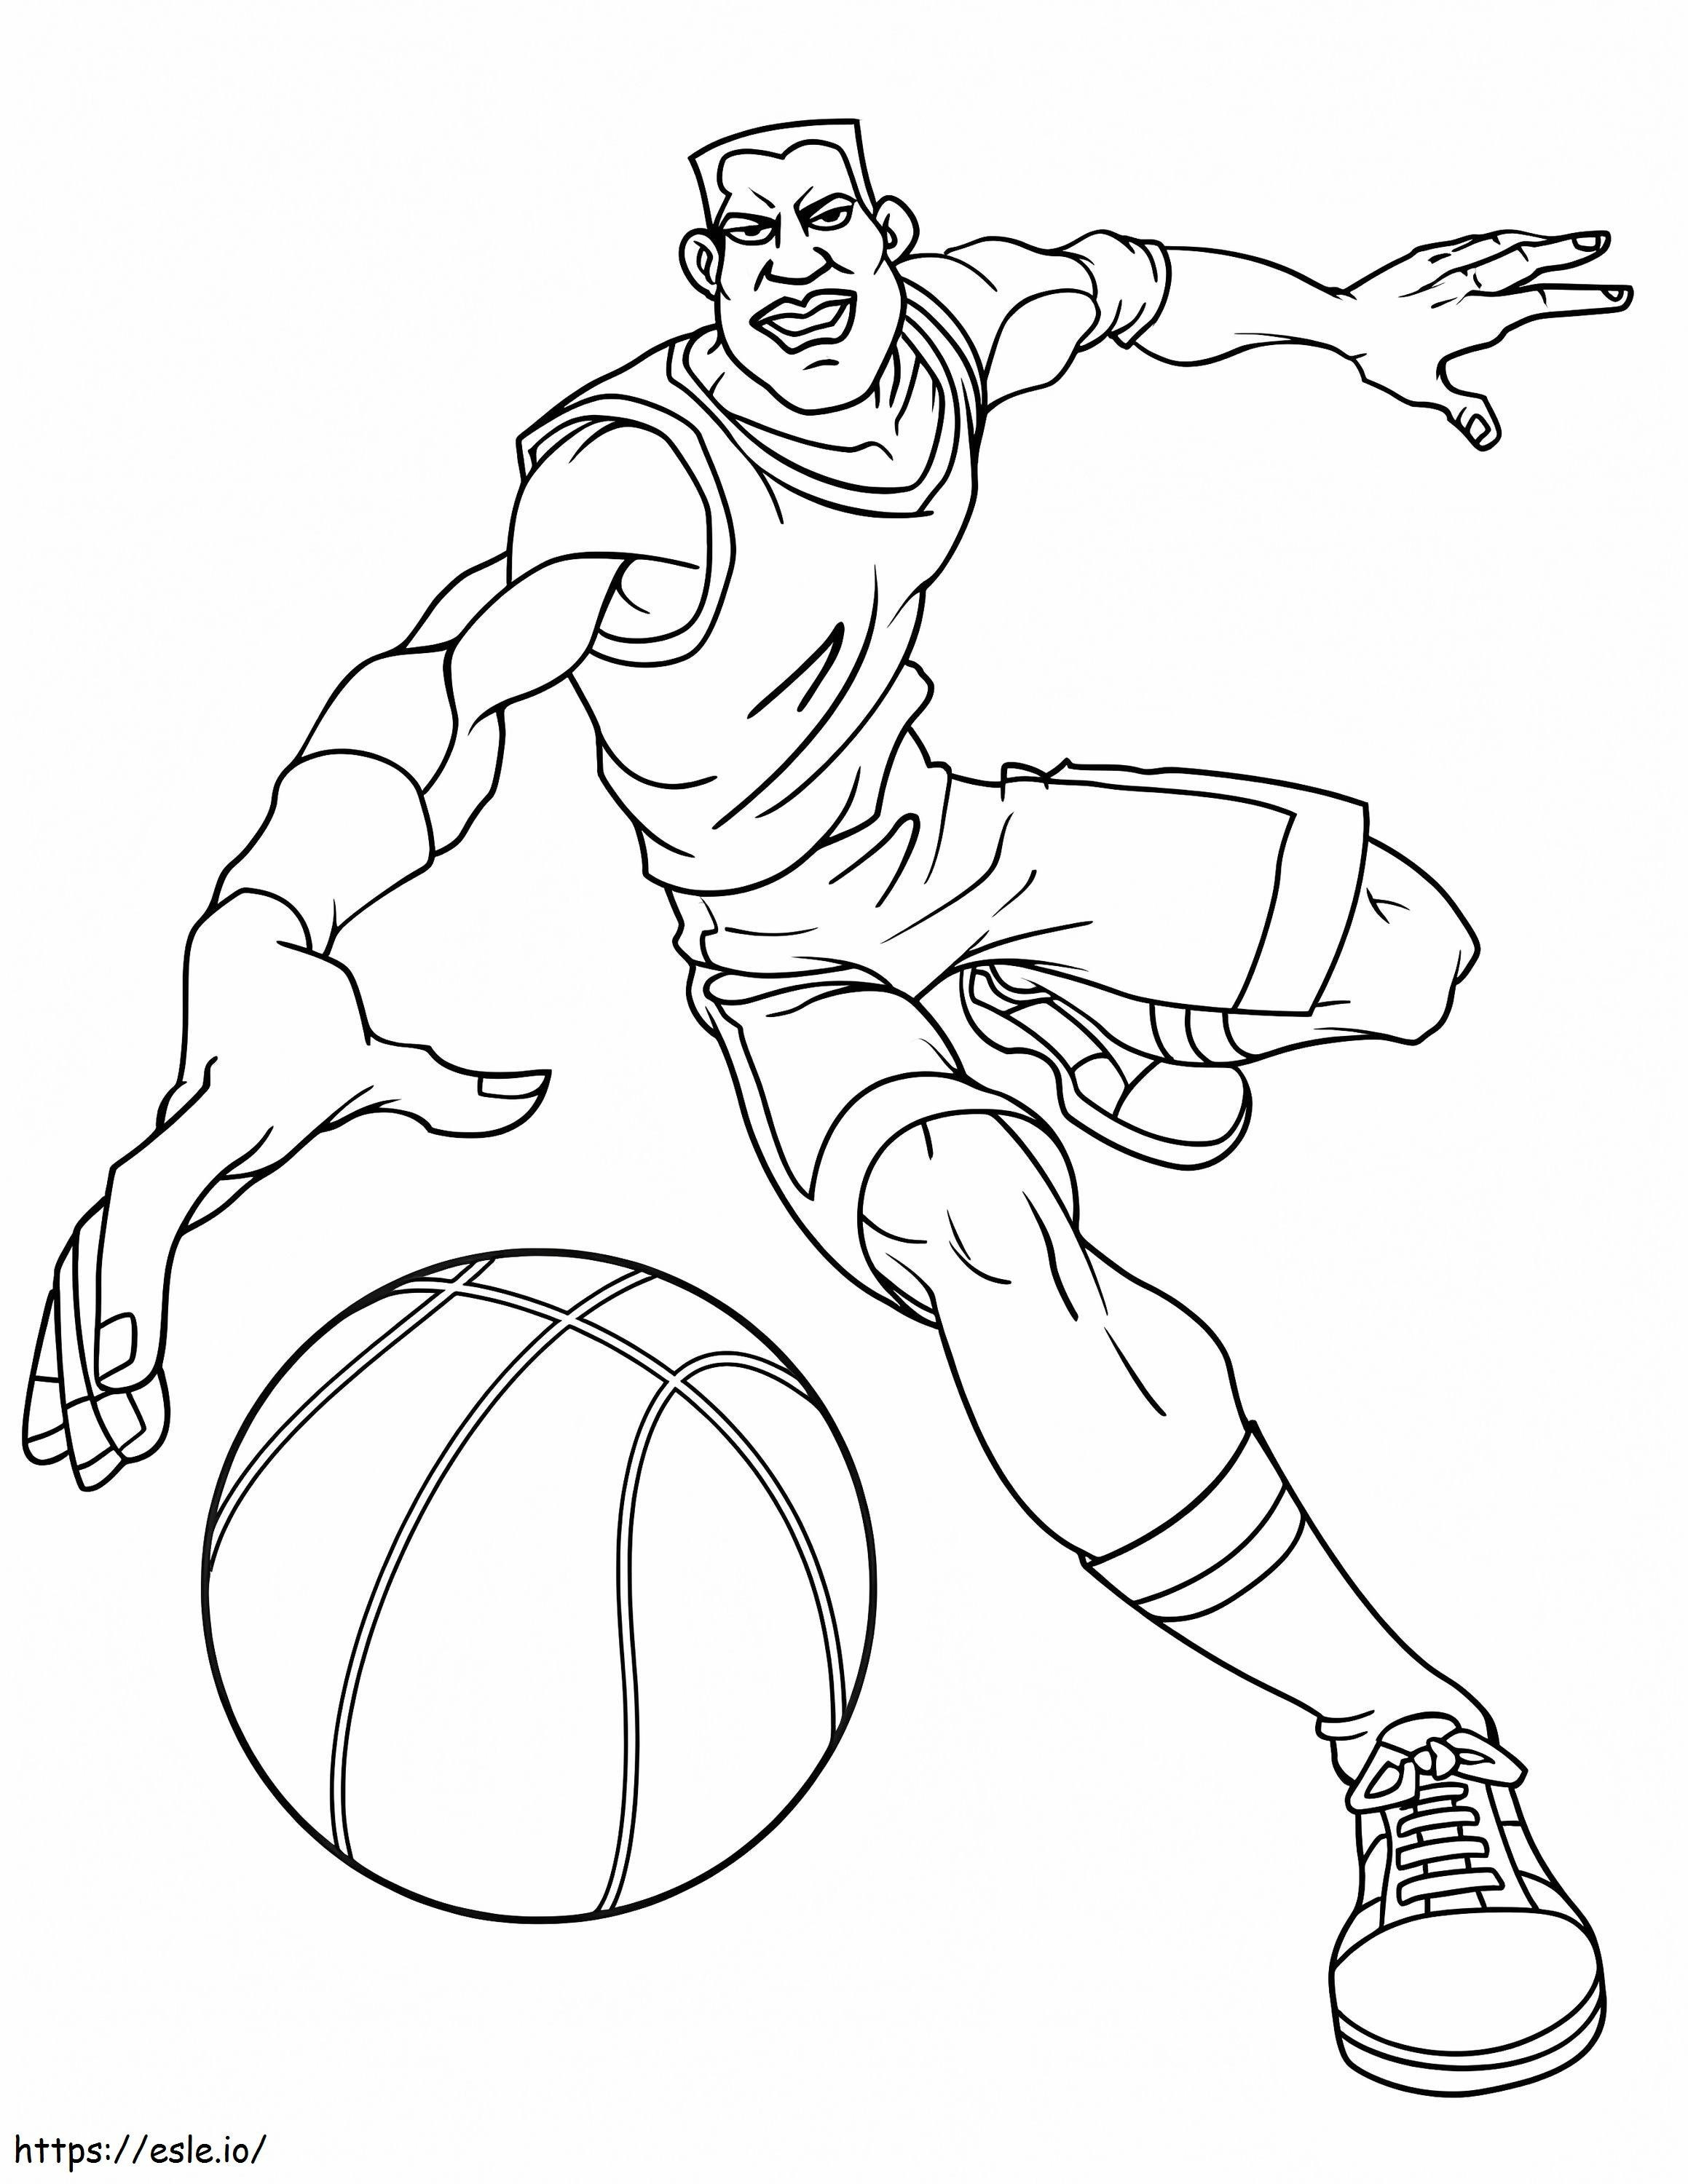 Hombre corriendo con baloncesto para colorear